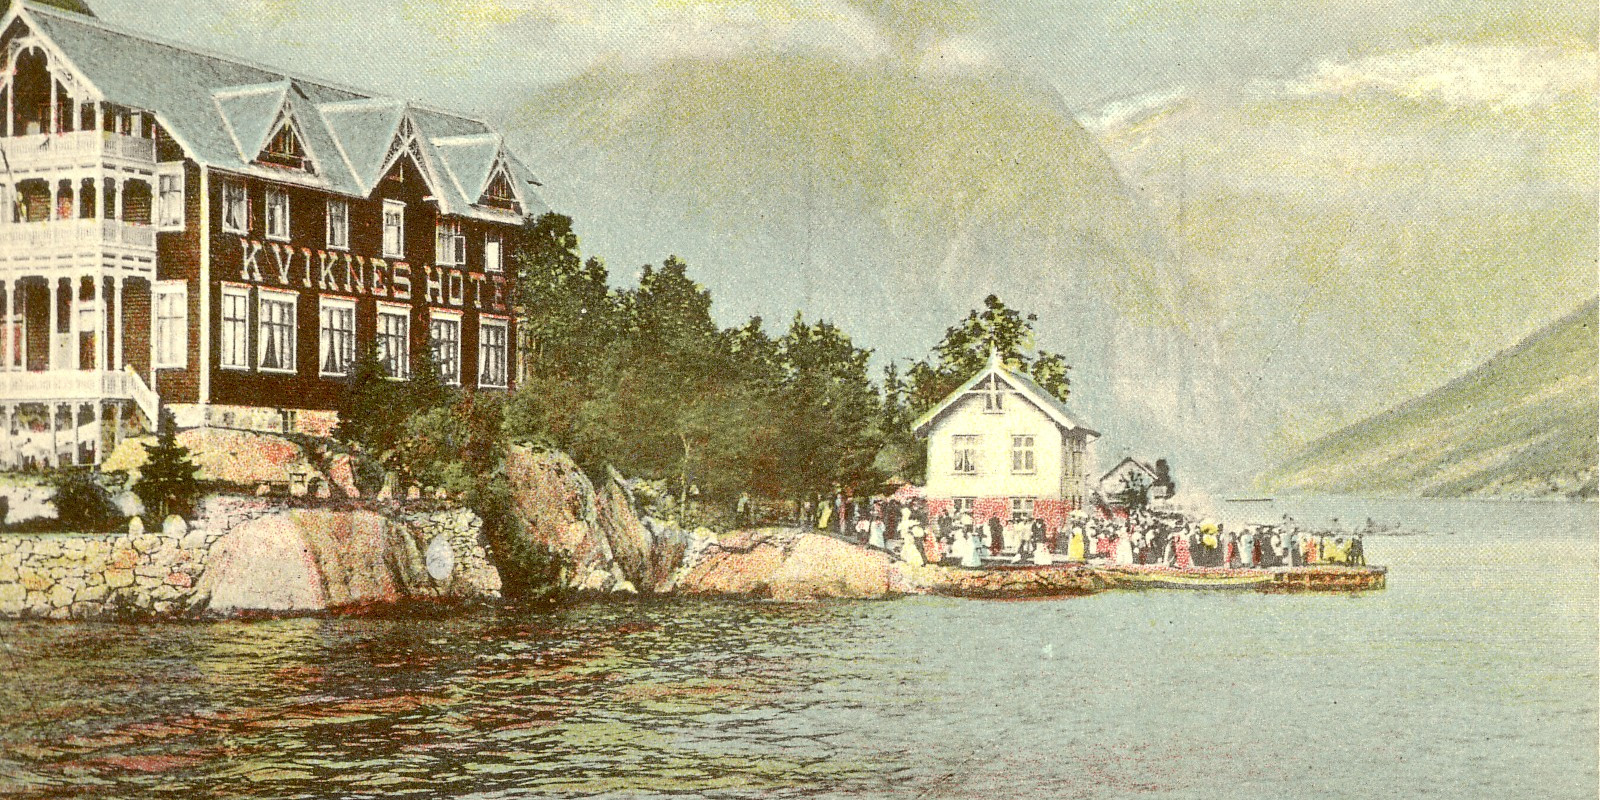 norsk-reiselivsmuseum/Norsk-Reiselivsmuseum-Kviknes-Hotel-Kaihuset-MSF-00757-1654174372.JPG